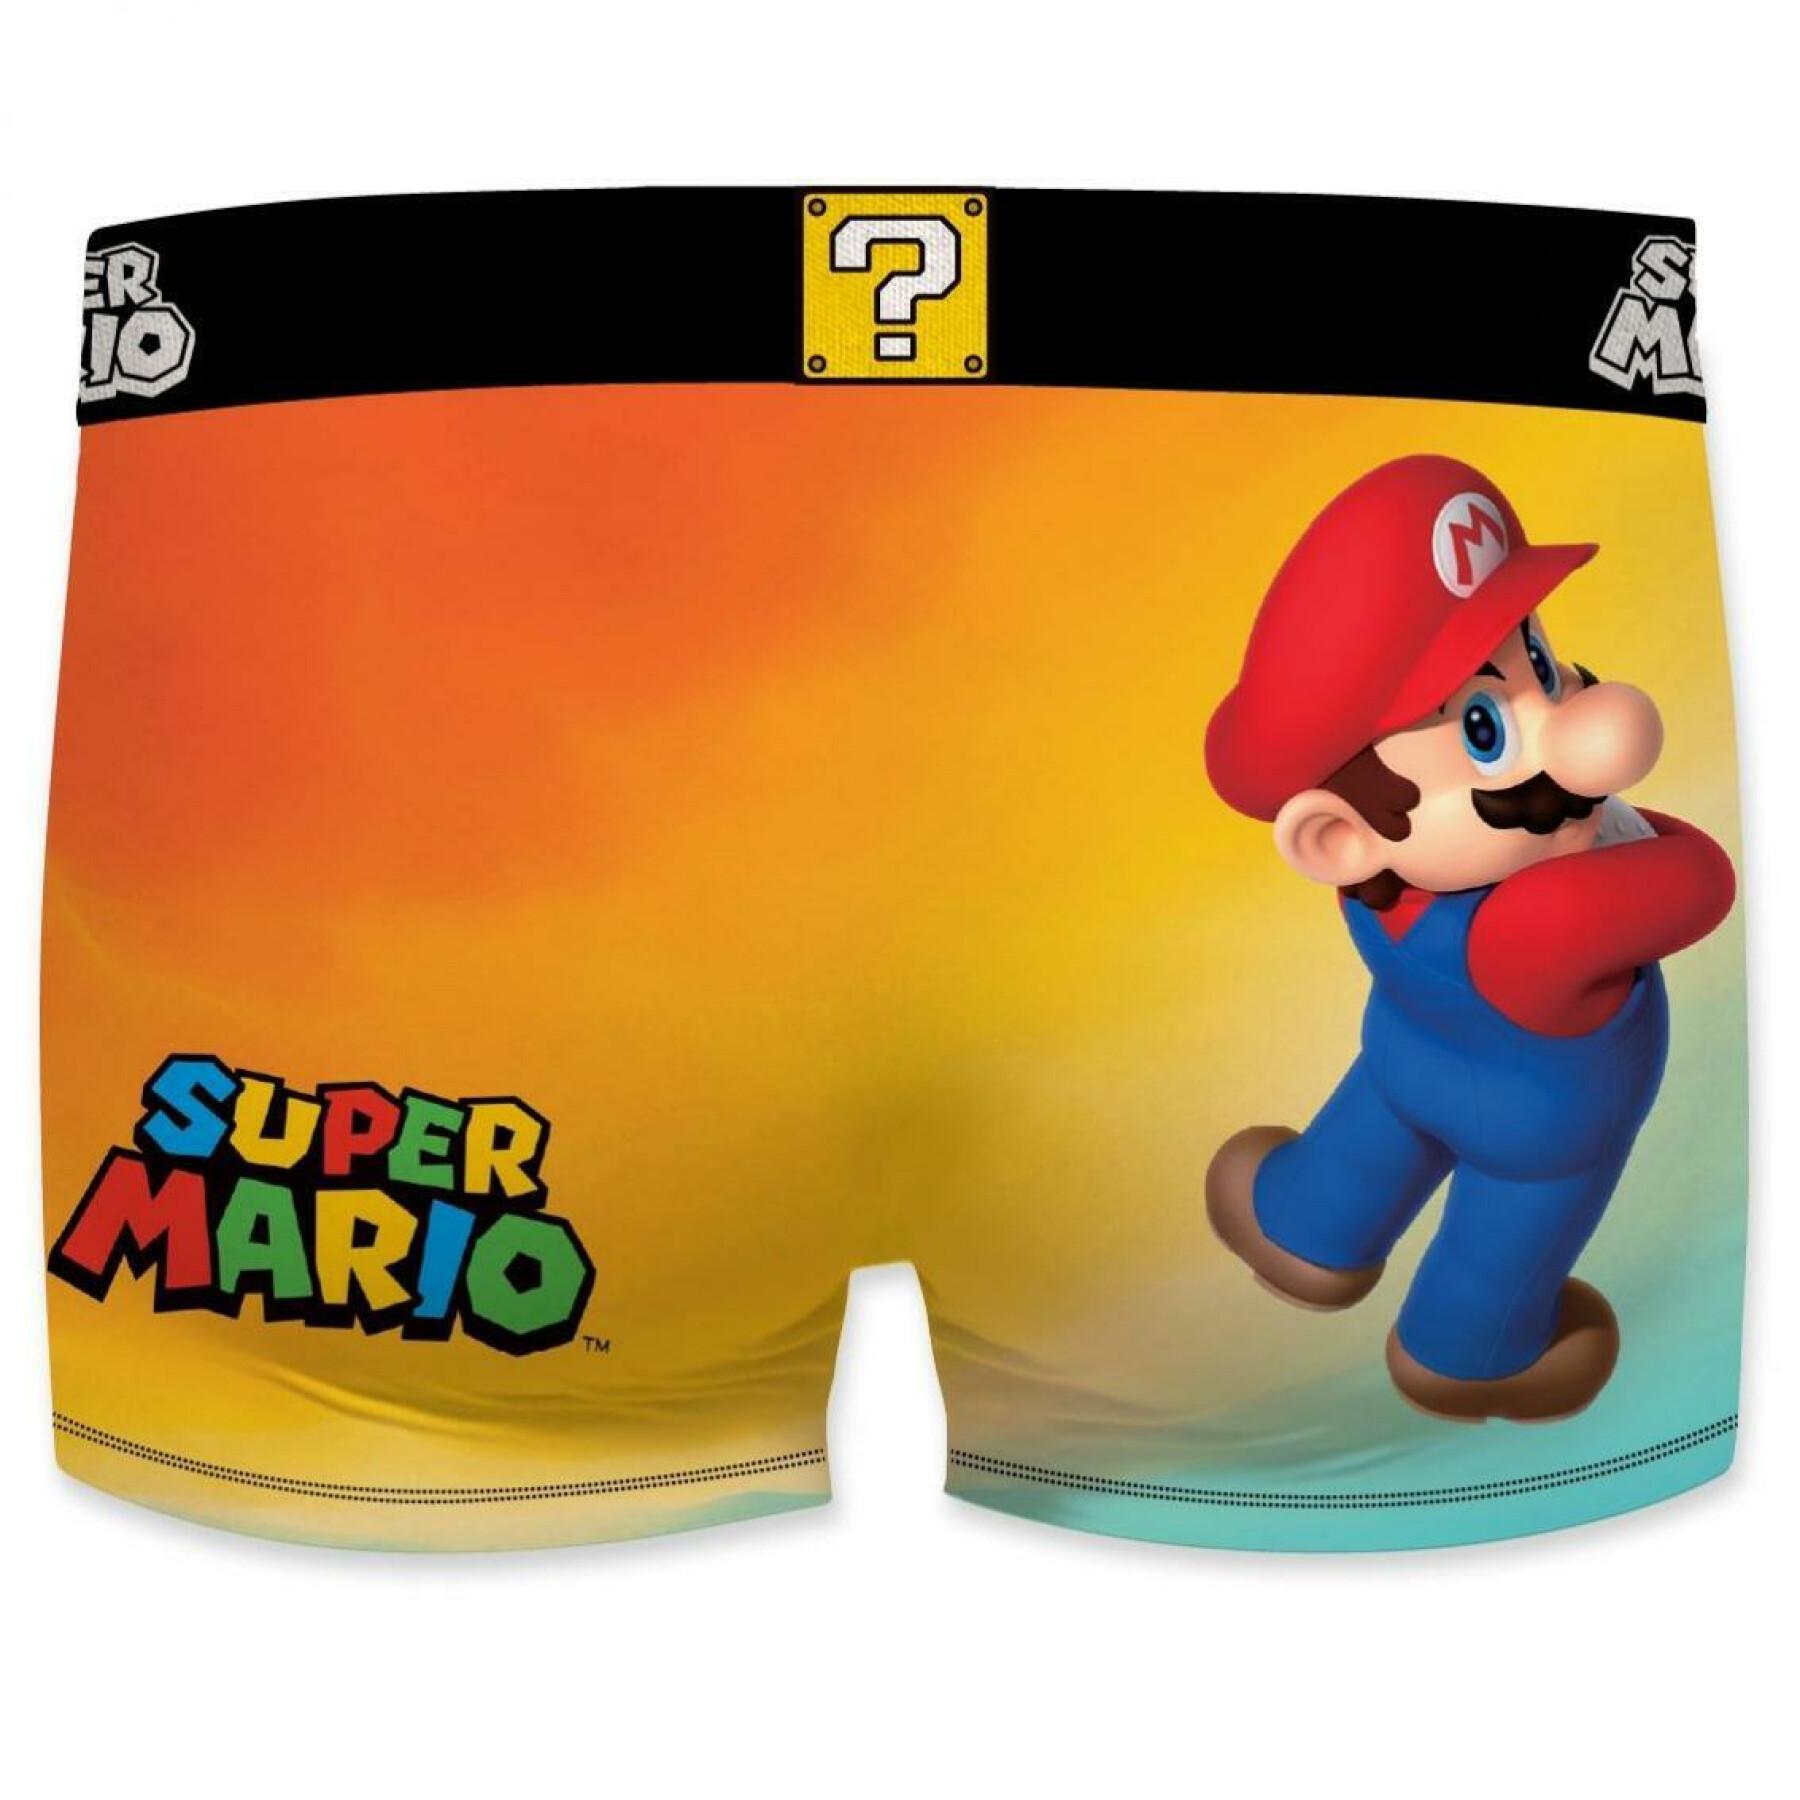 Children's boxer shorts Freegun Super Mario Bros Mario